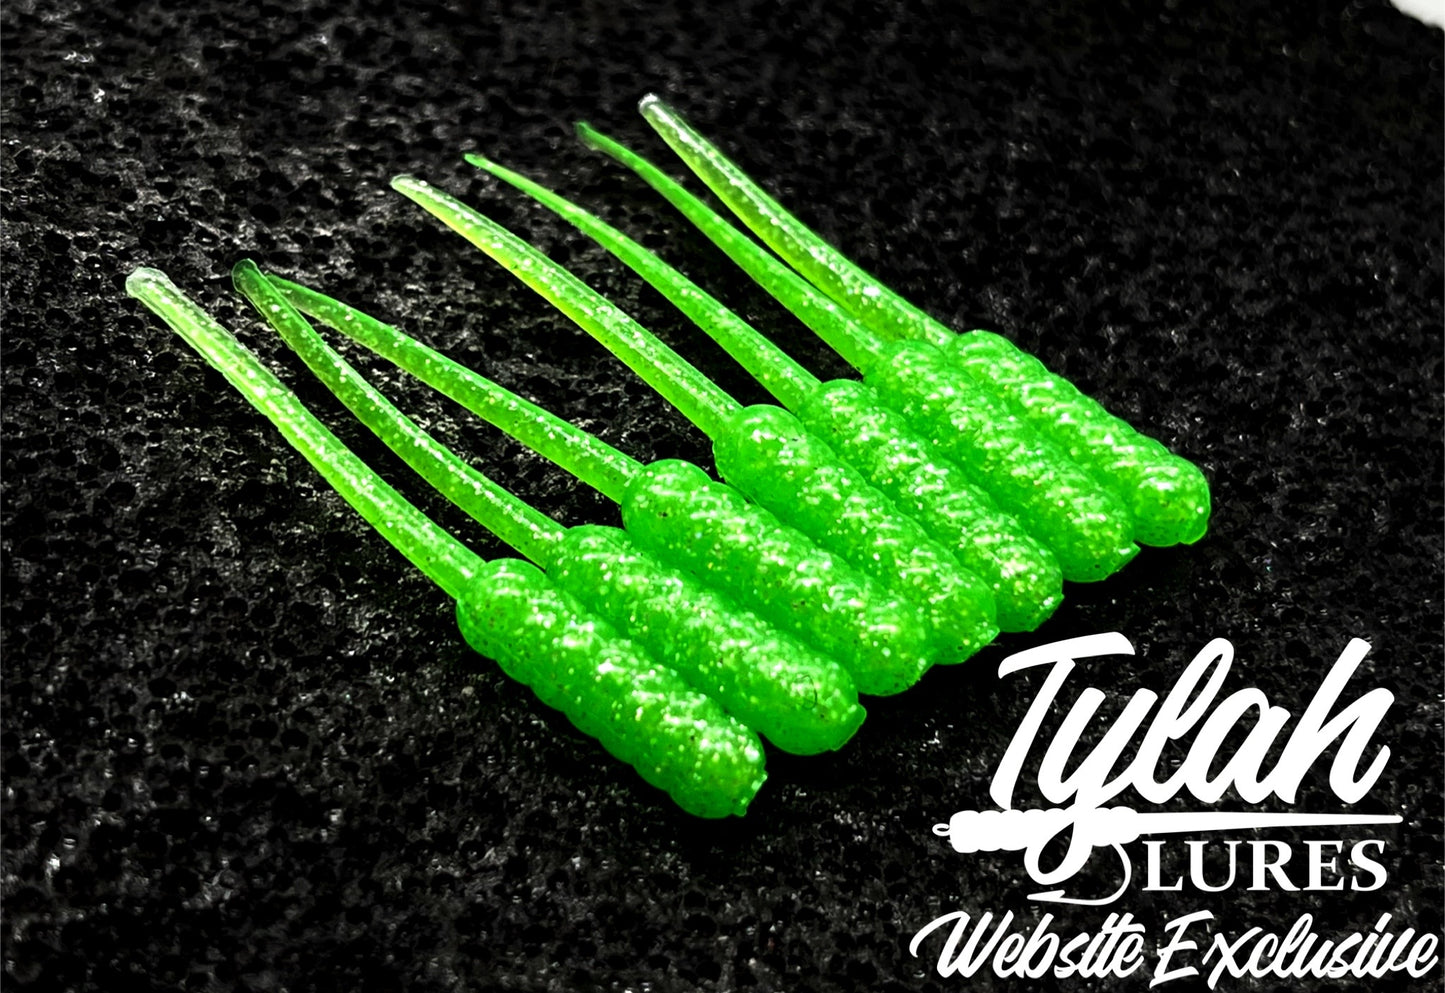 TylahLures Website Exclusive Green Glow 1.5in.